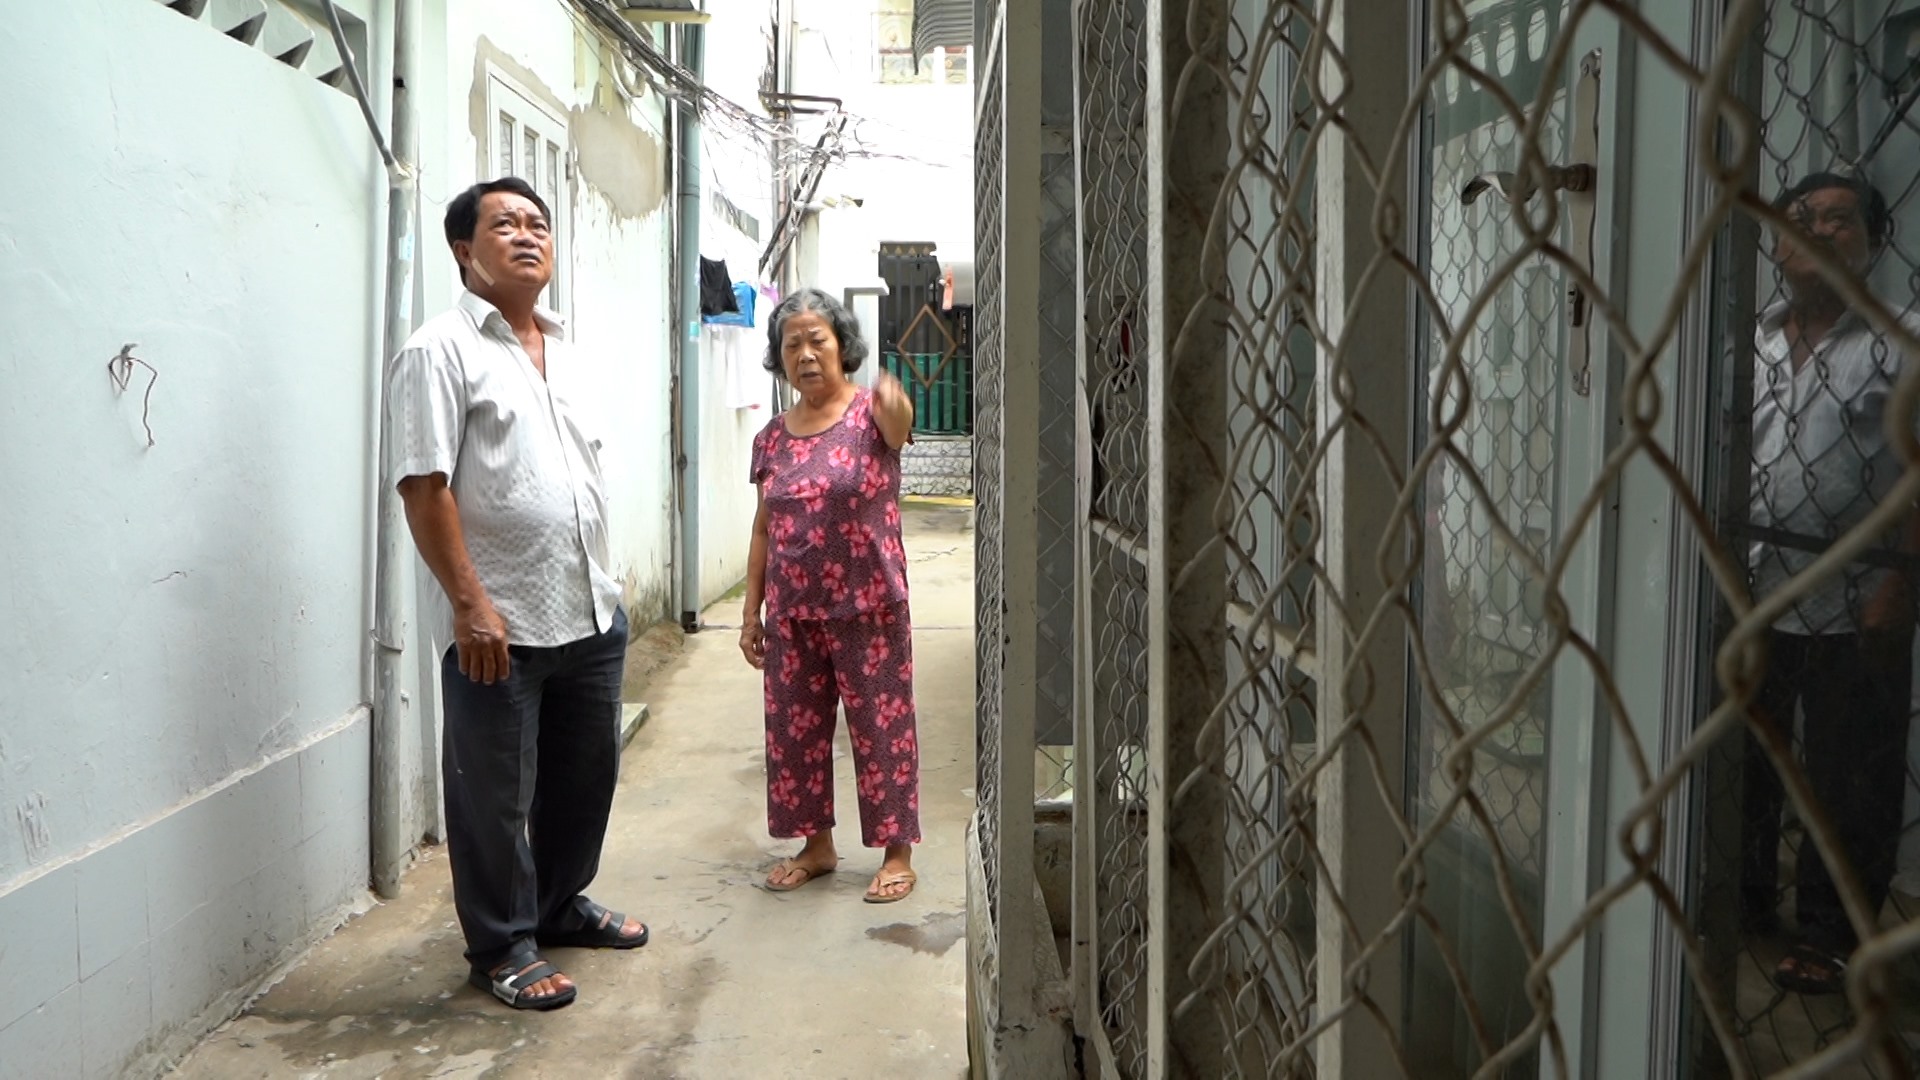 Bà Trần Thị Thái (72 tuổi) và ông Quách Văn Út (60 tuổi) bức xúc khi có một số hộ dân lấn chiếm. Ảnh: Tạ Quang